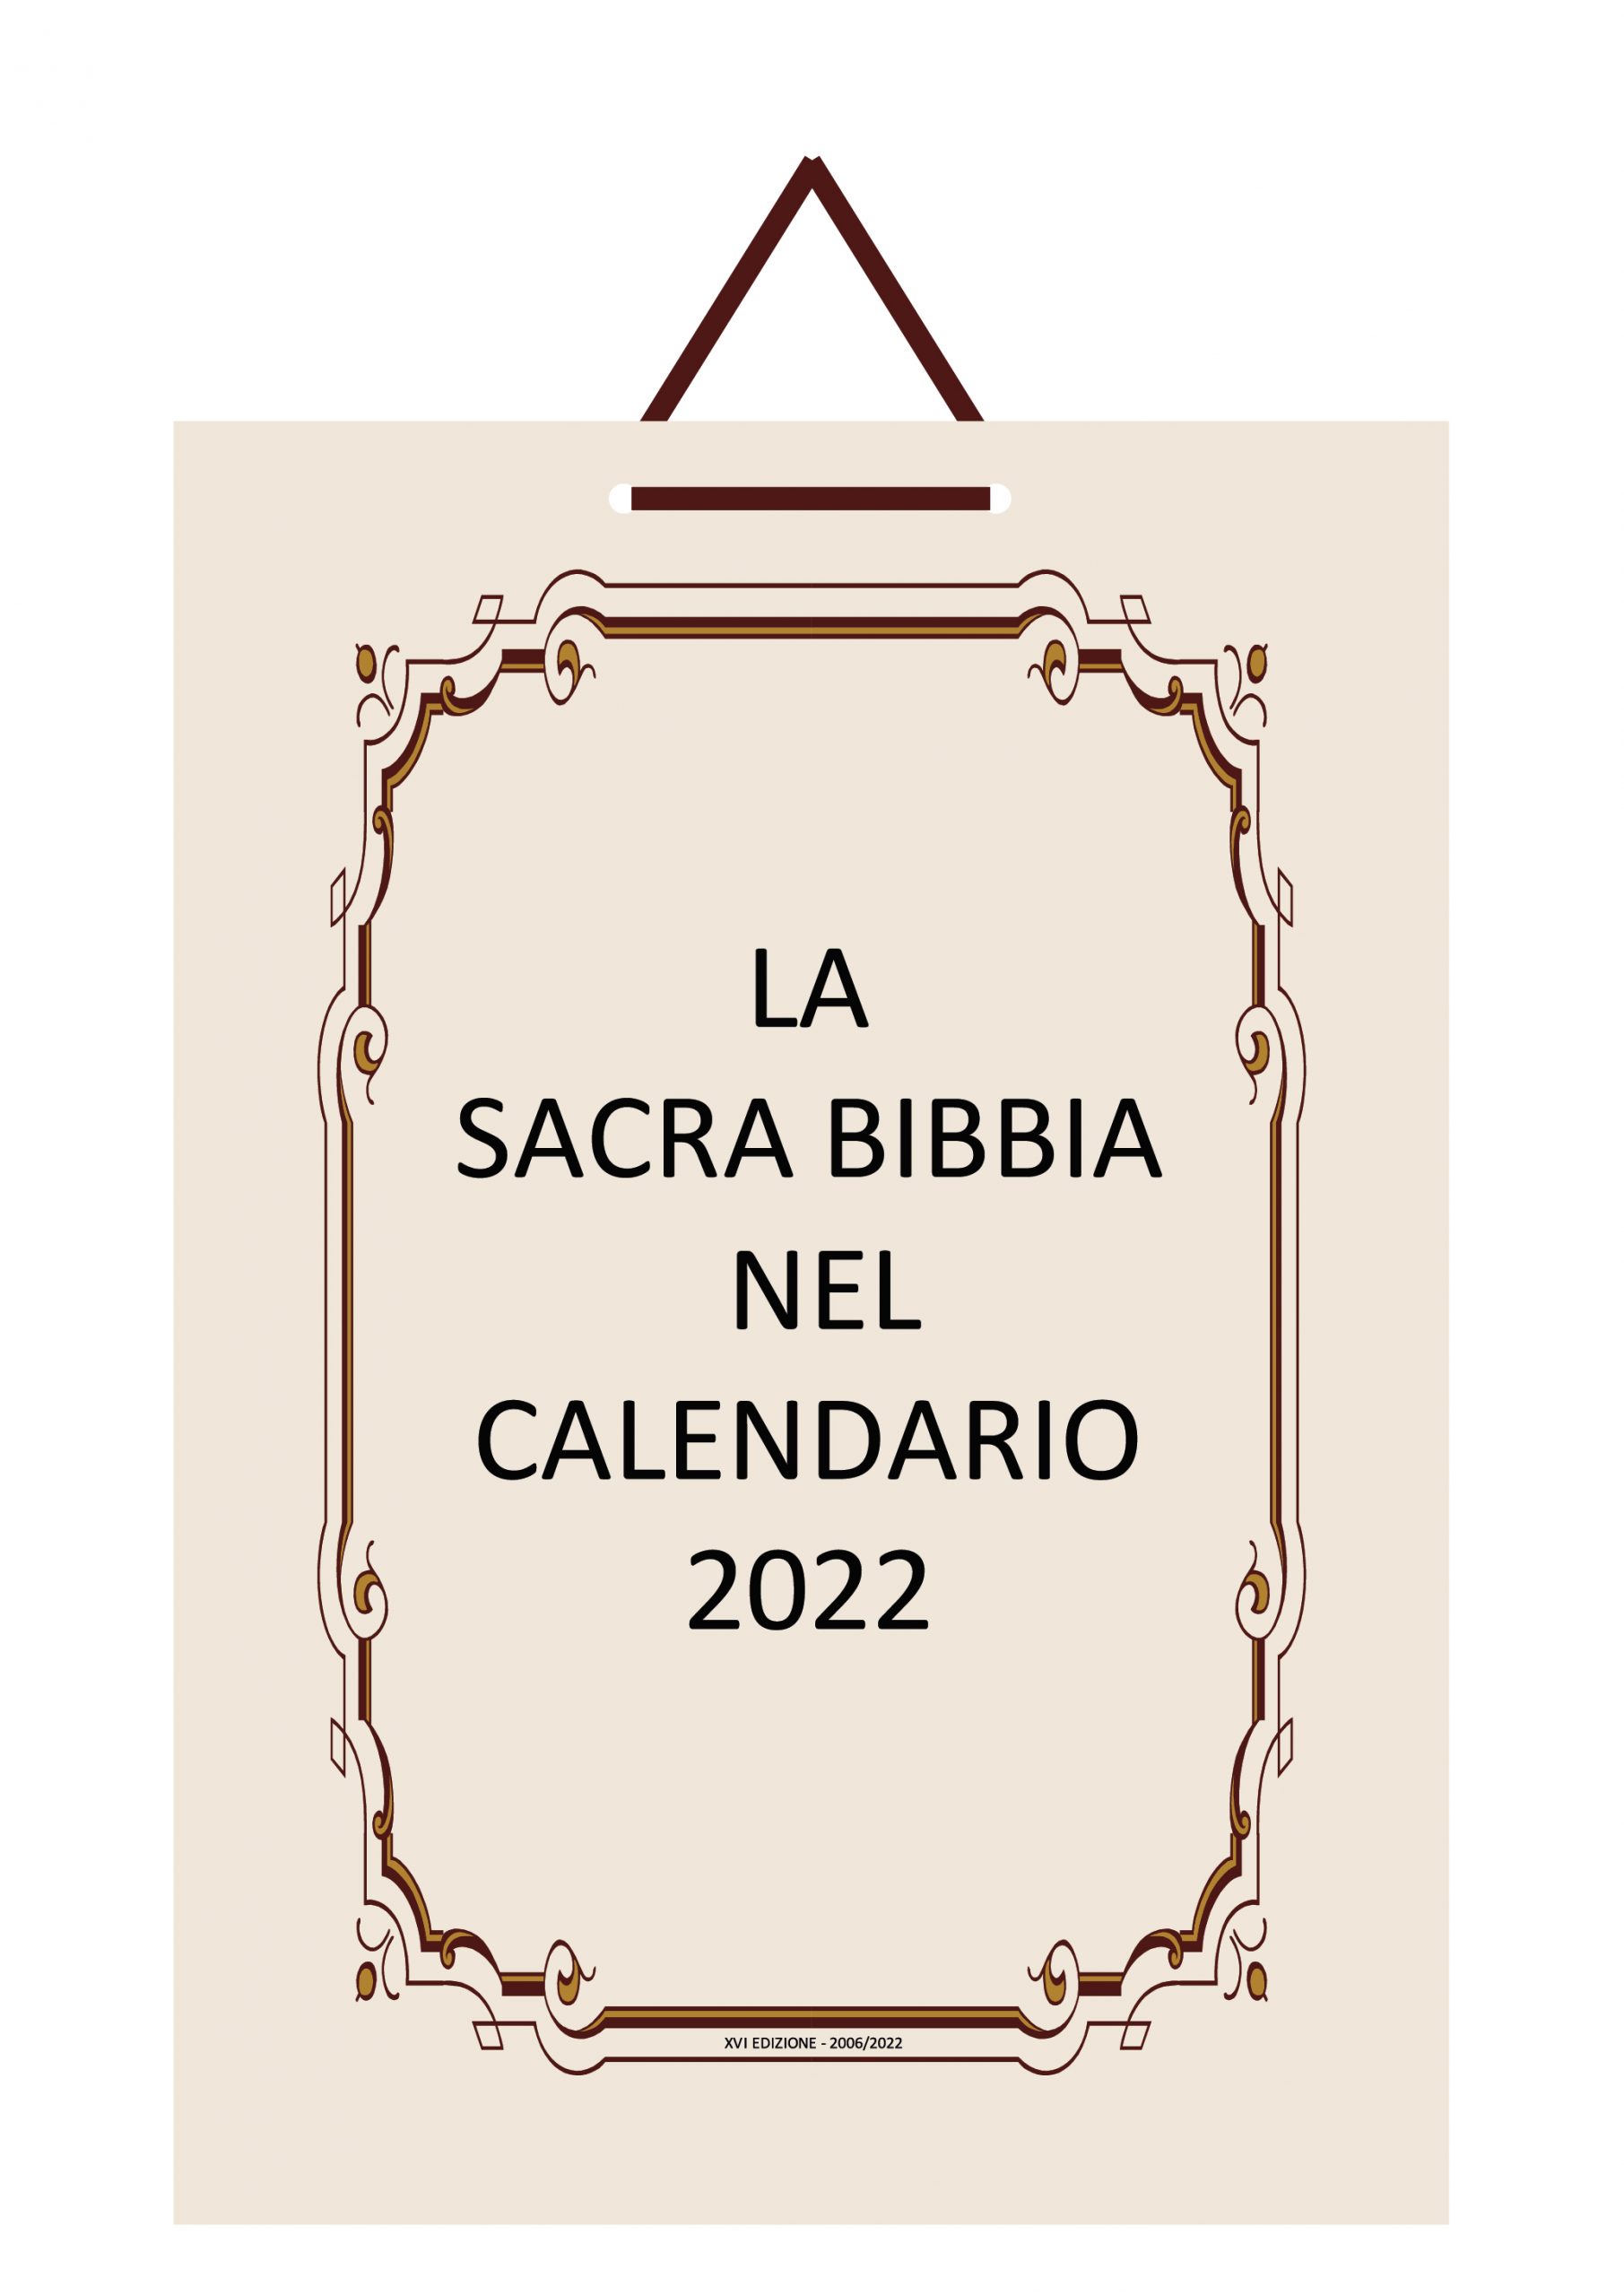 La Sacra Bibbia nel Calendario 2022